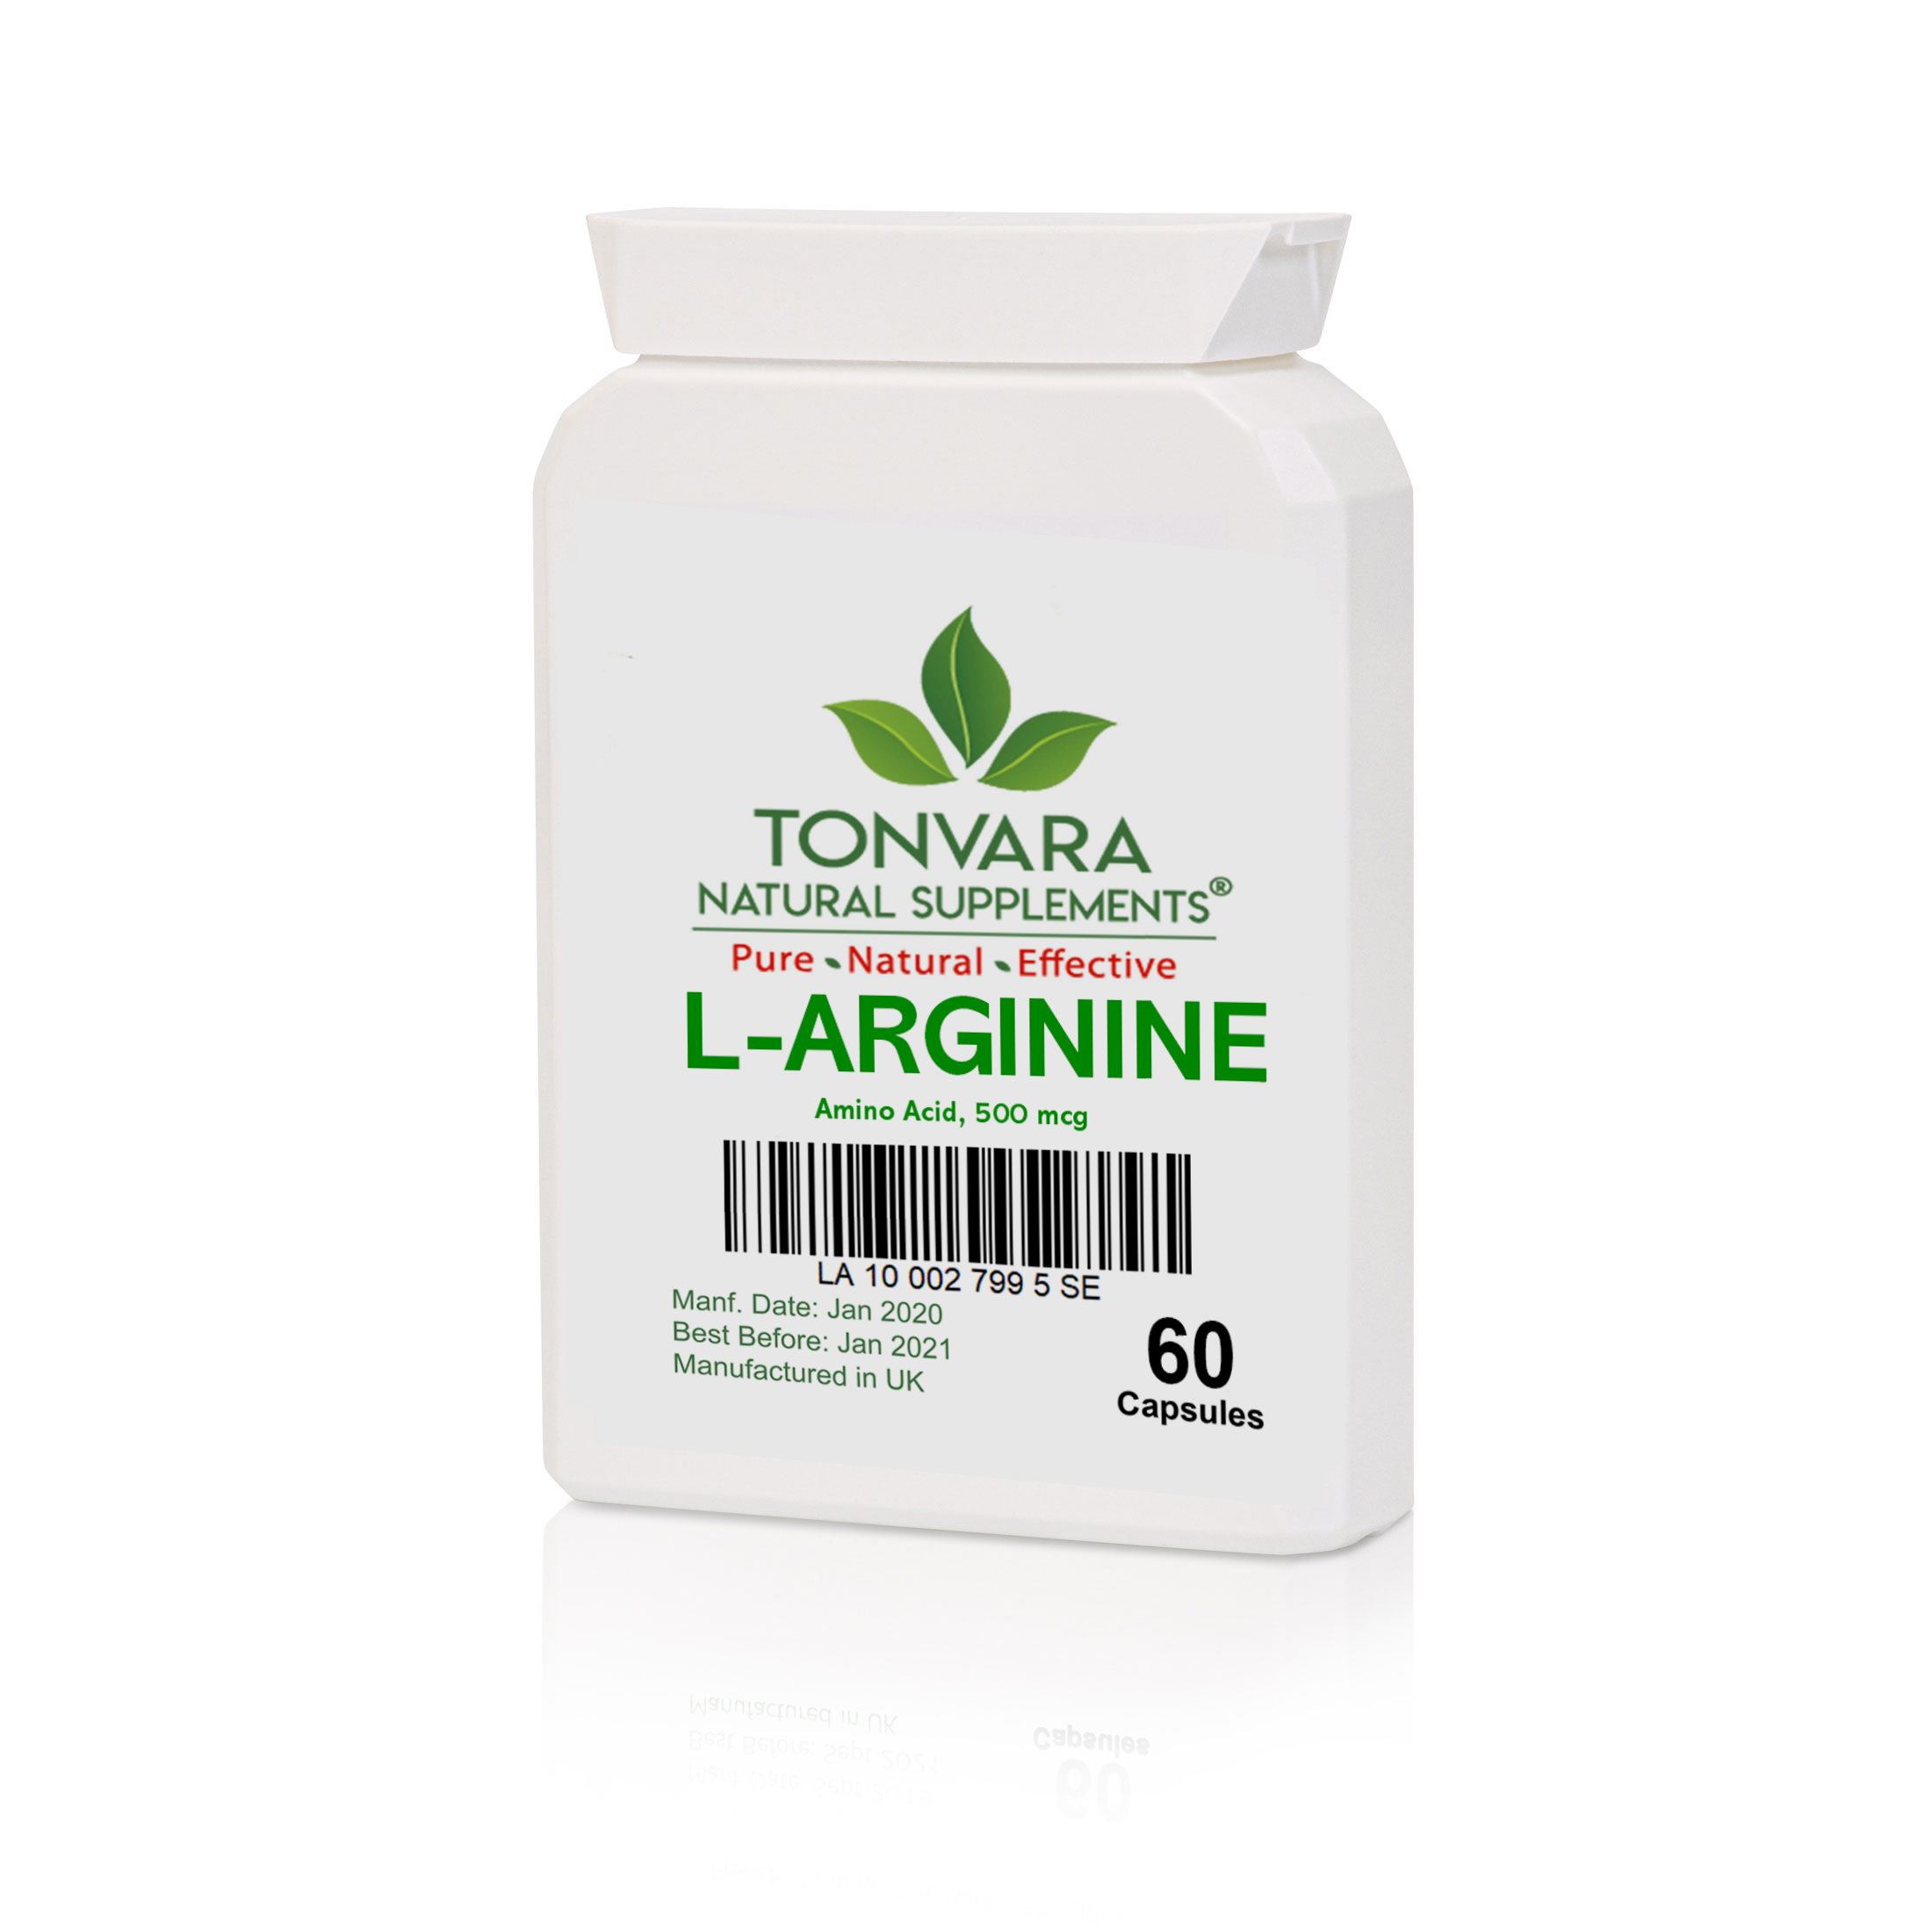 Tonvara L-Arginine Amino Acid 500mcg